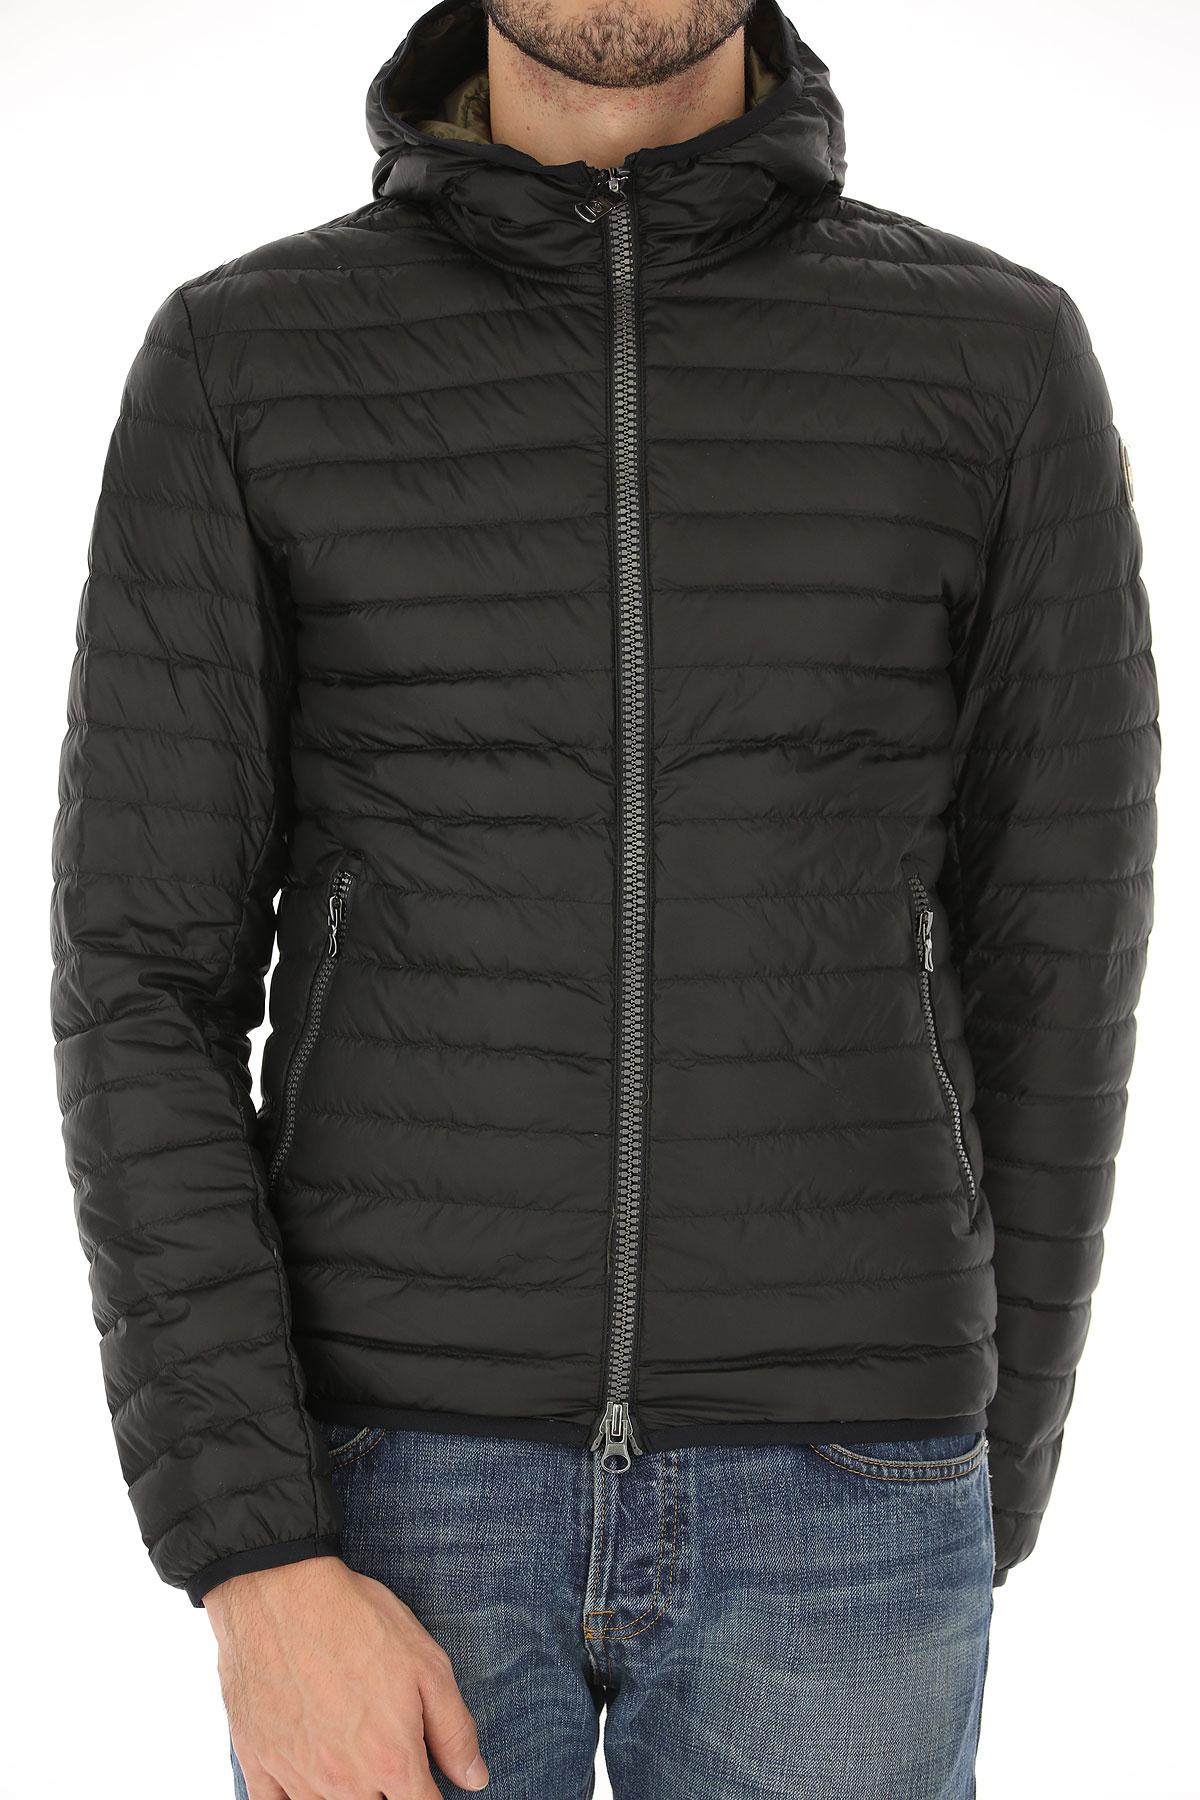 Colmar Down Jacket For Men in Black for Men - Lyst